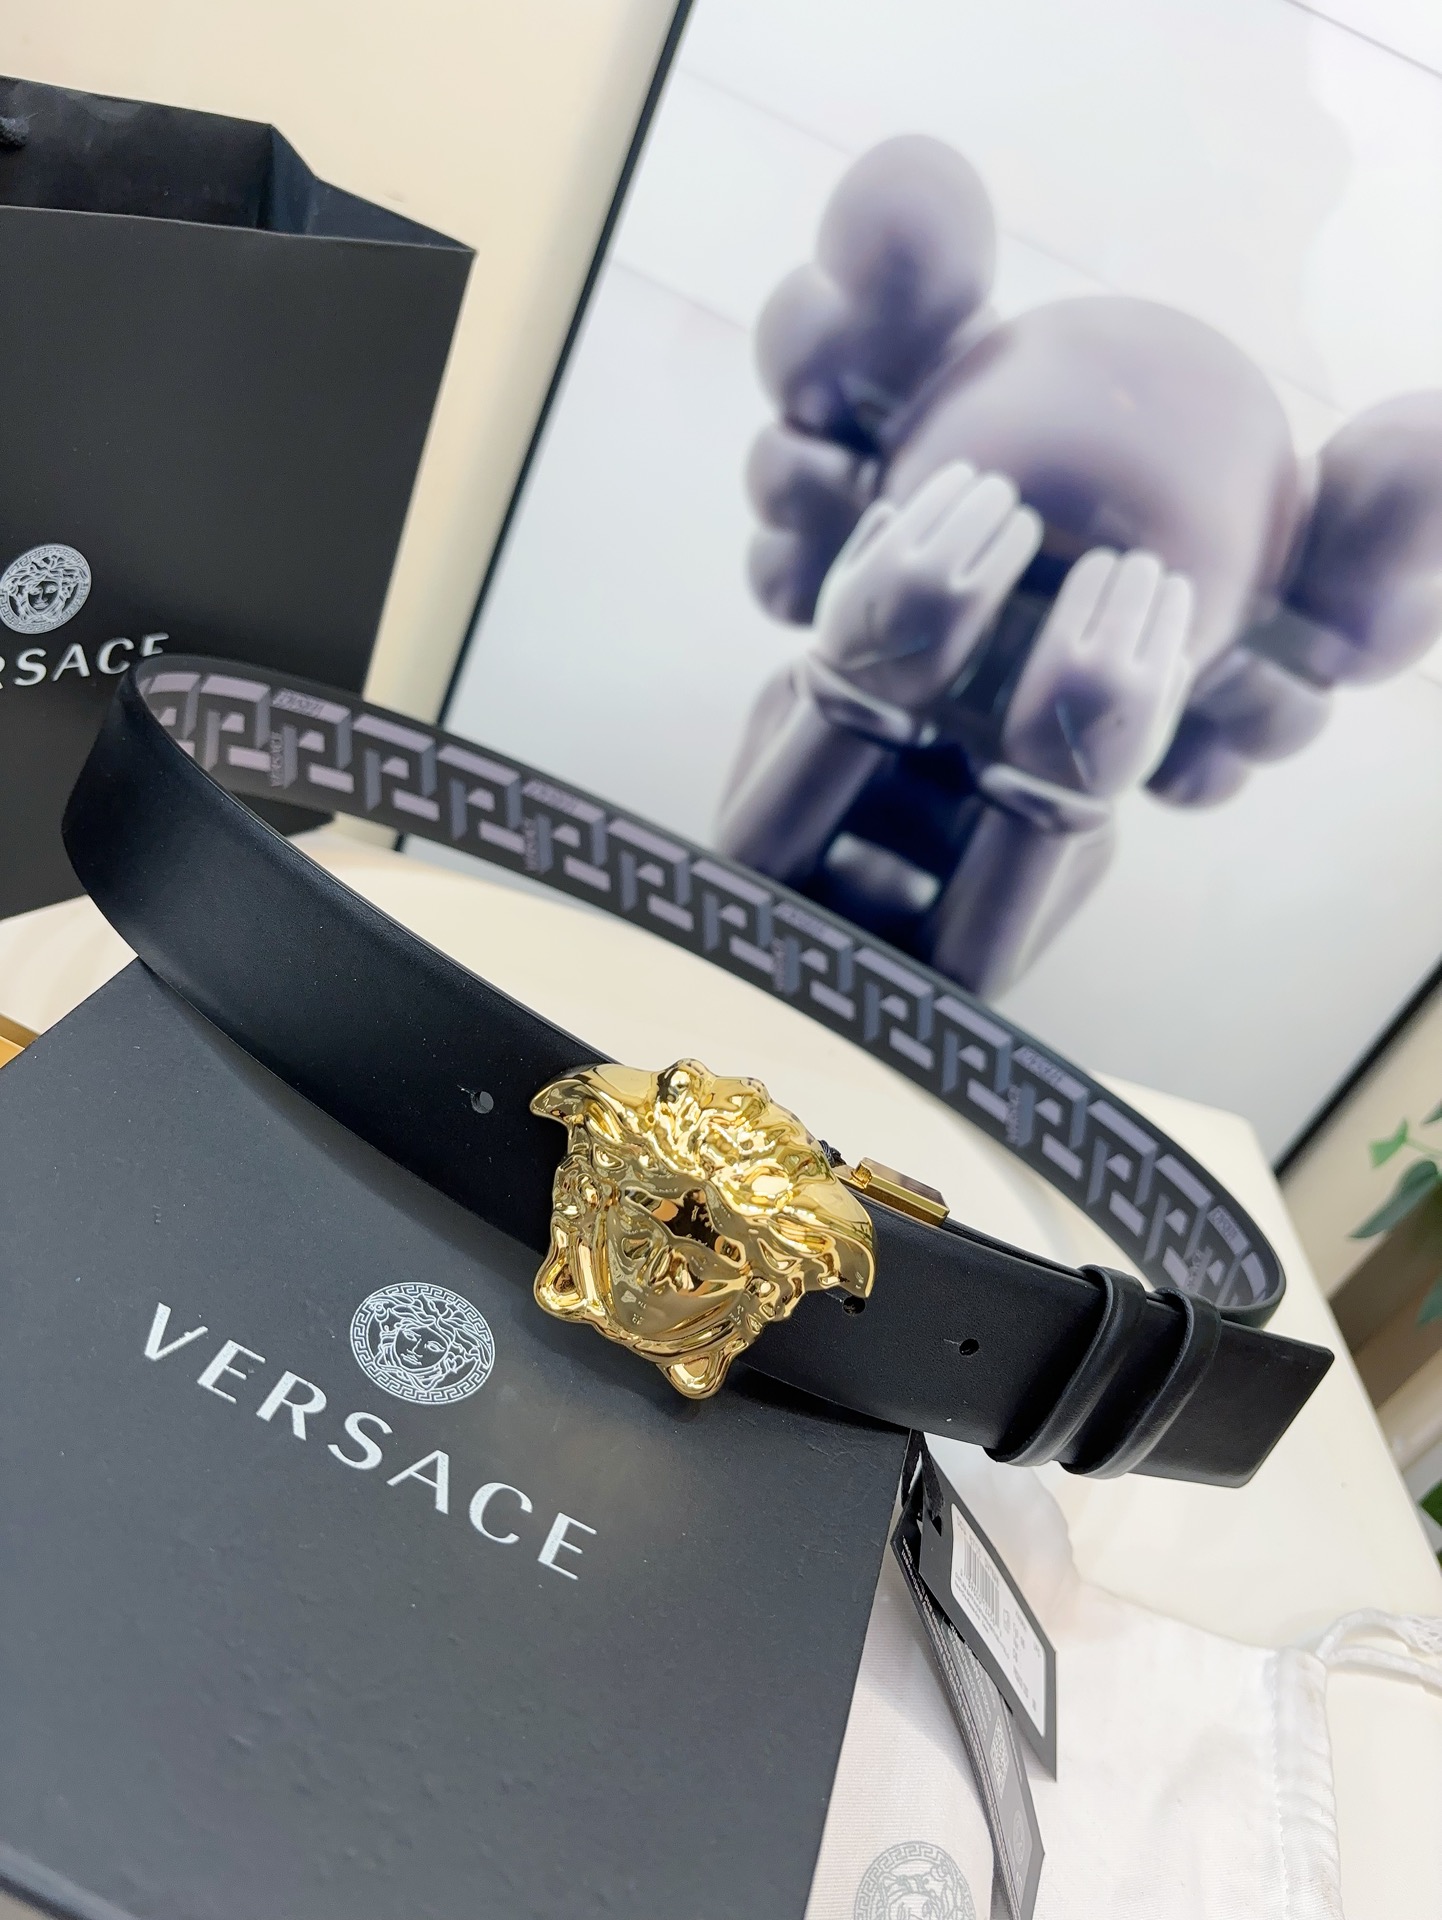 范思哲此款经典的Versace腰带由柔软的小牛皮制成饰有LaGreca印花并配有3D美杜莎腰带扣4.0c